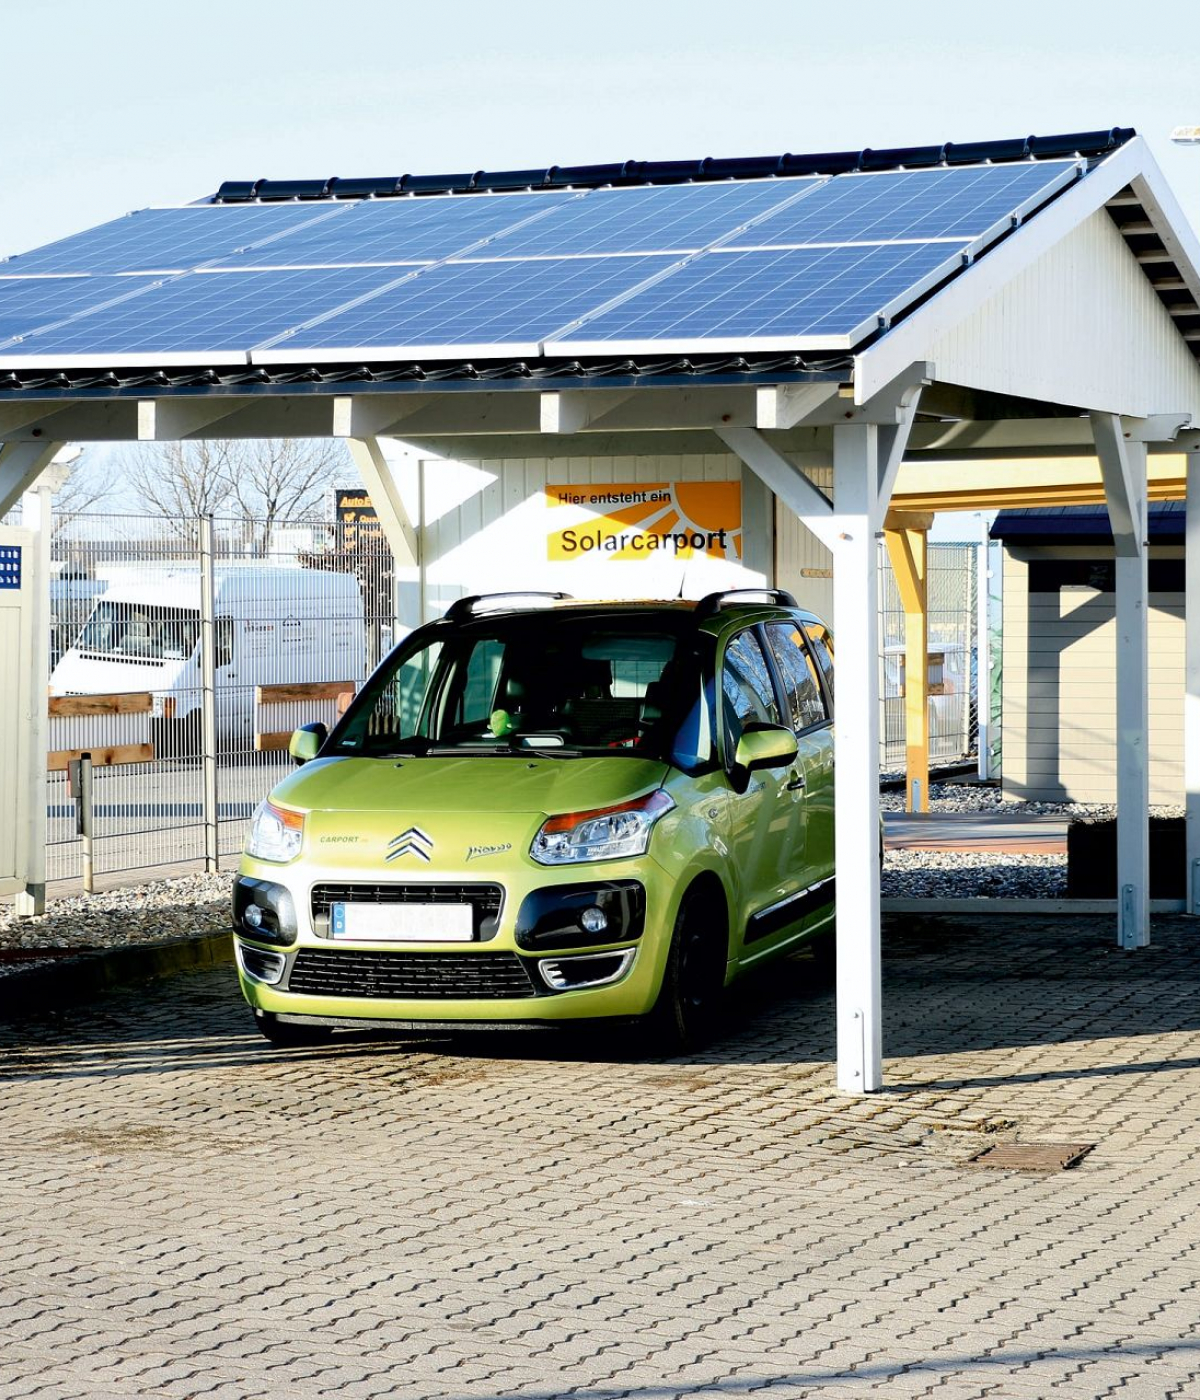 Ein weißer Solar Carport steht auf grauen Pflastersteinen. Auf dem Dach befinden sich acht Solarpanels, jeweils vier pro Reihe. Unter dem Solar Carport ist ein grünes Auto geparkt.